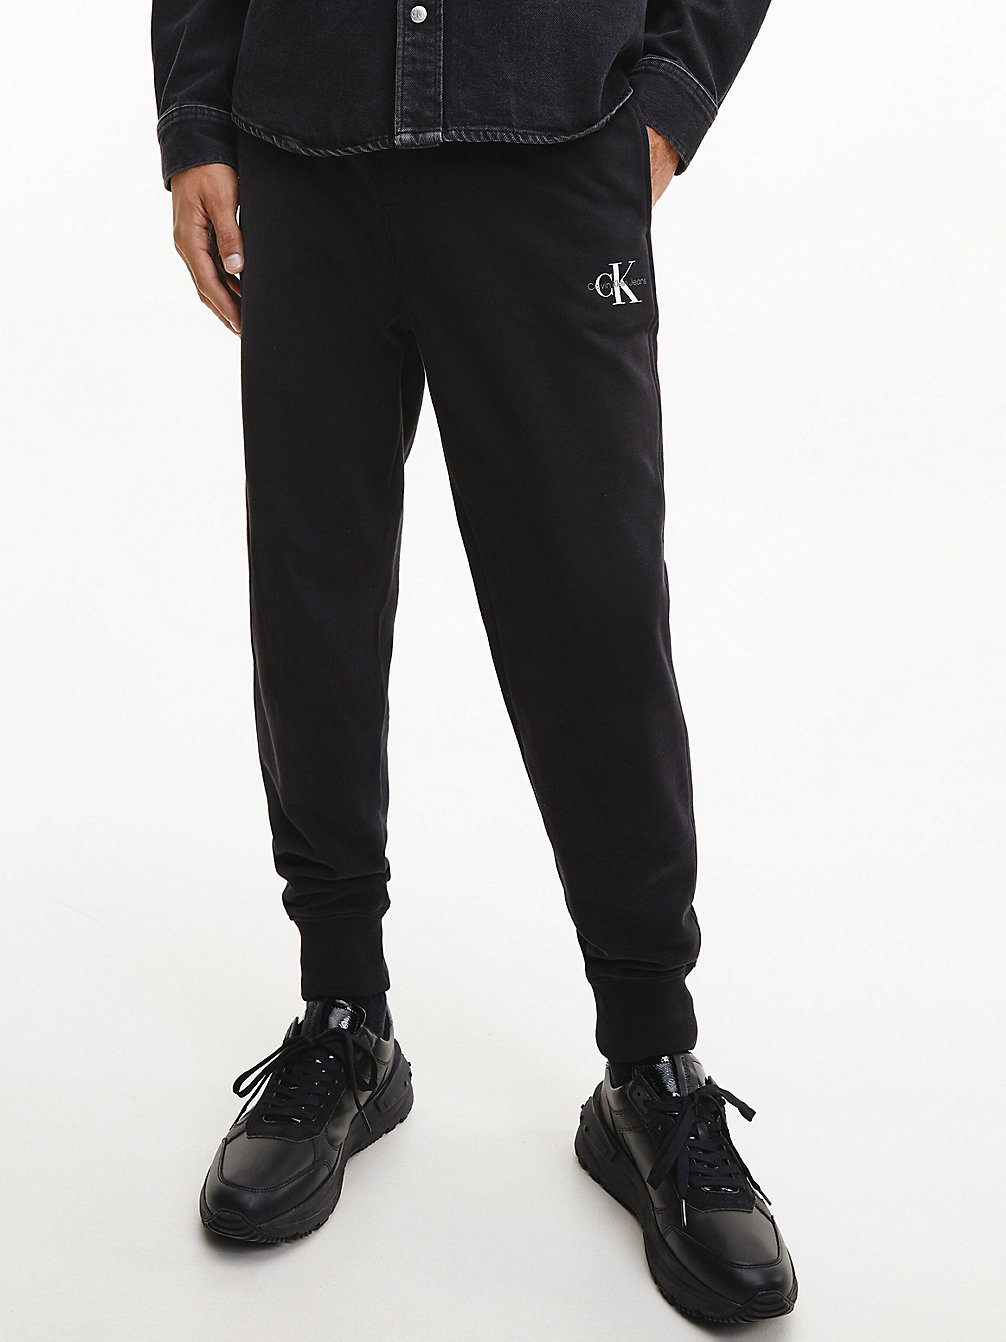 CK BLACK > Spodnie Dresowe Z Monogramem > undefined Mężczyźni - Calvin Klein